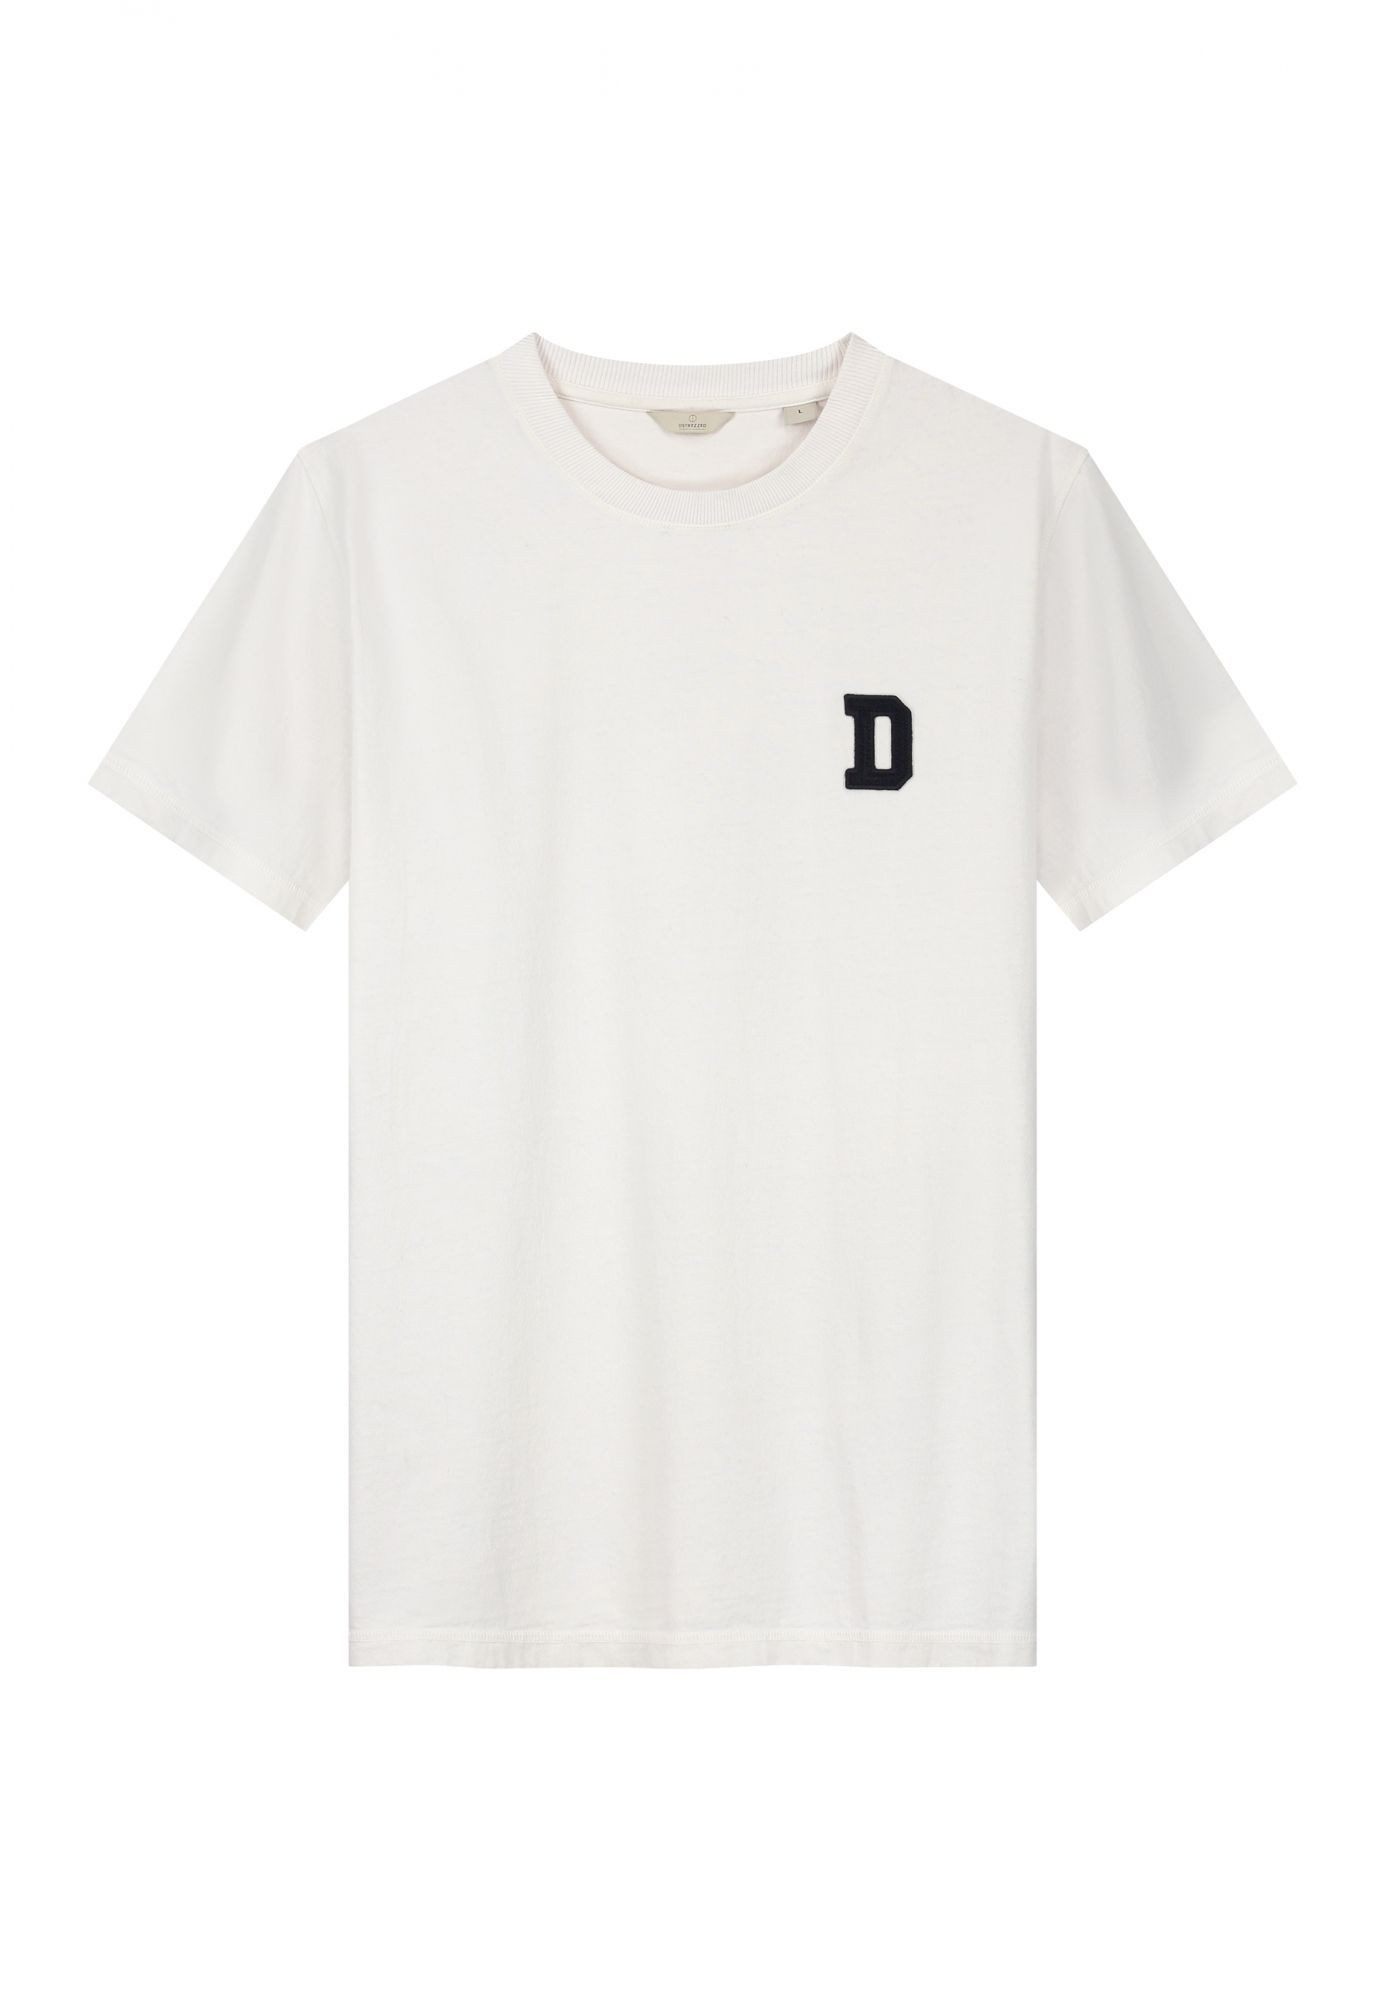 Dstrezzed T-Shirt - Kurzarmshirt - Basic Shirt - Ty Tee